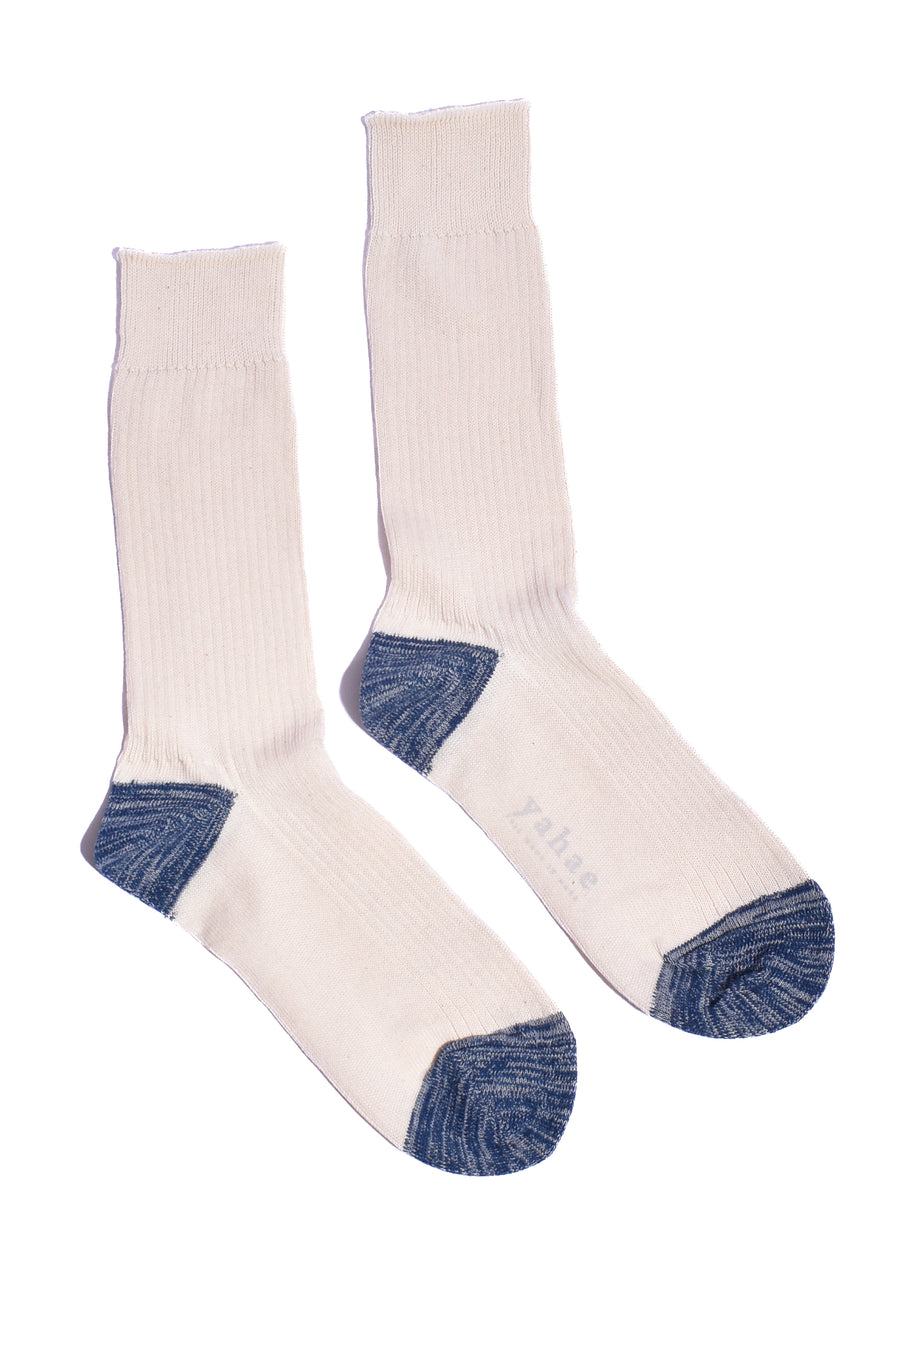 Women's Trouser Socks • Organic Cotton Space Dye